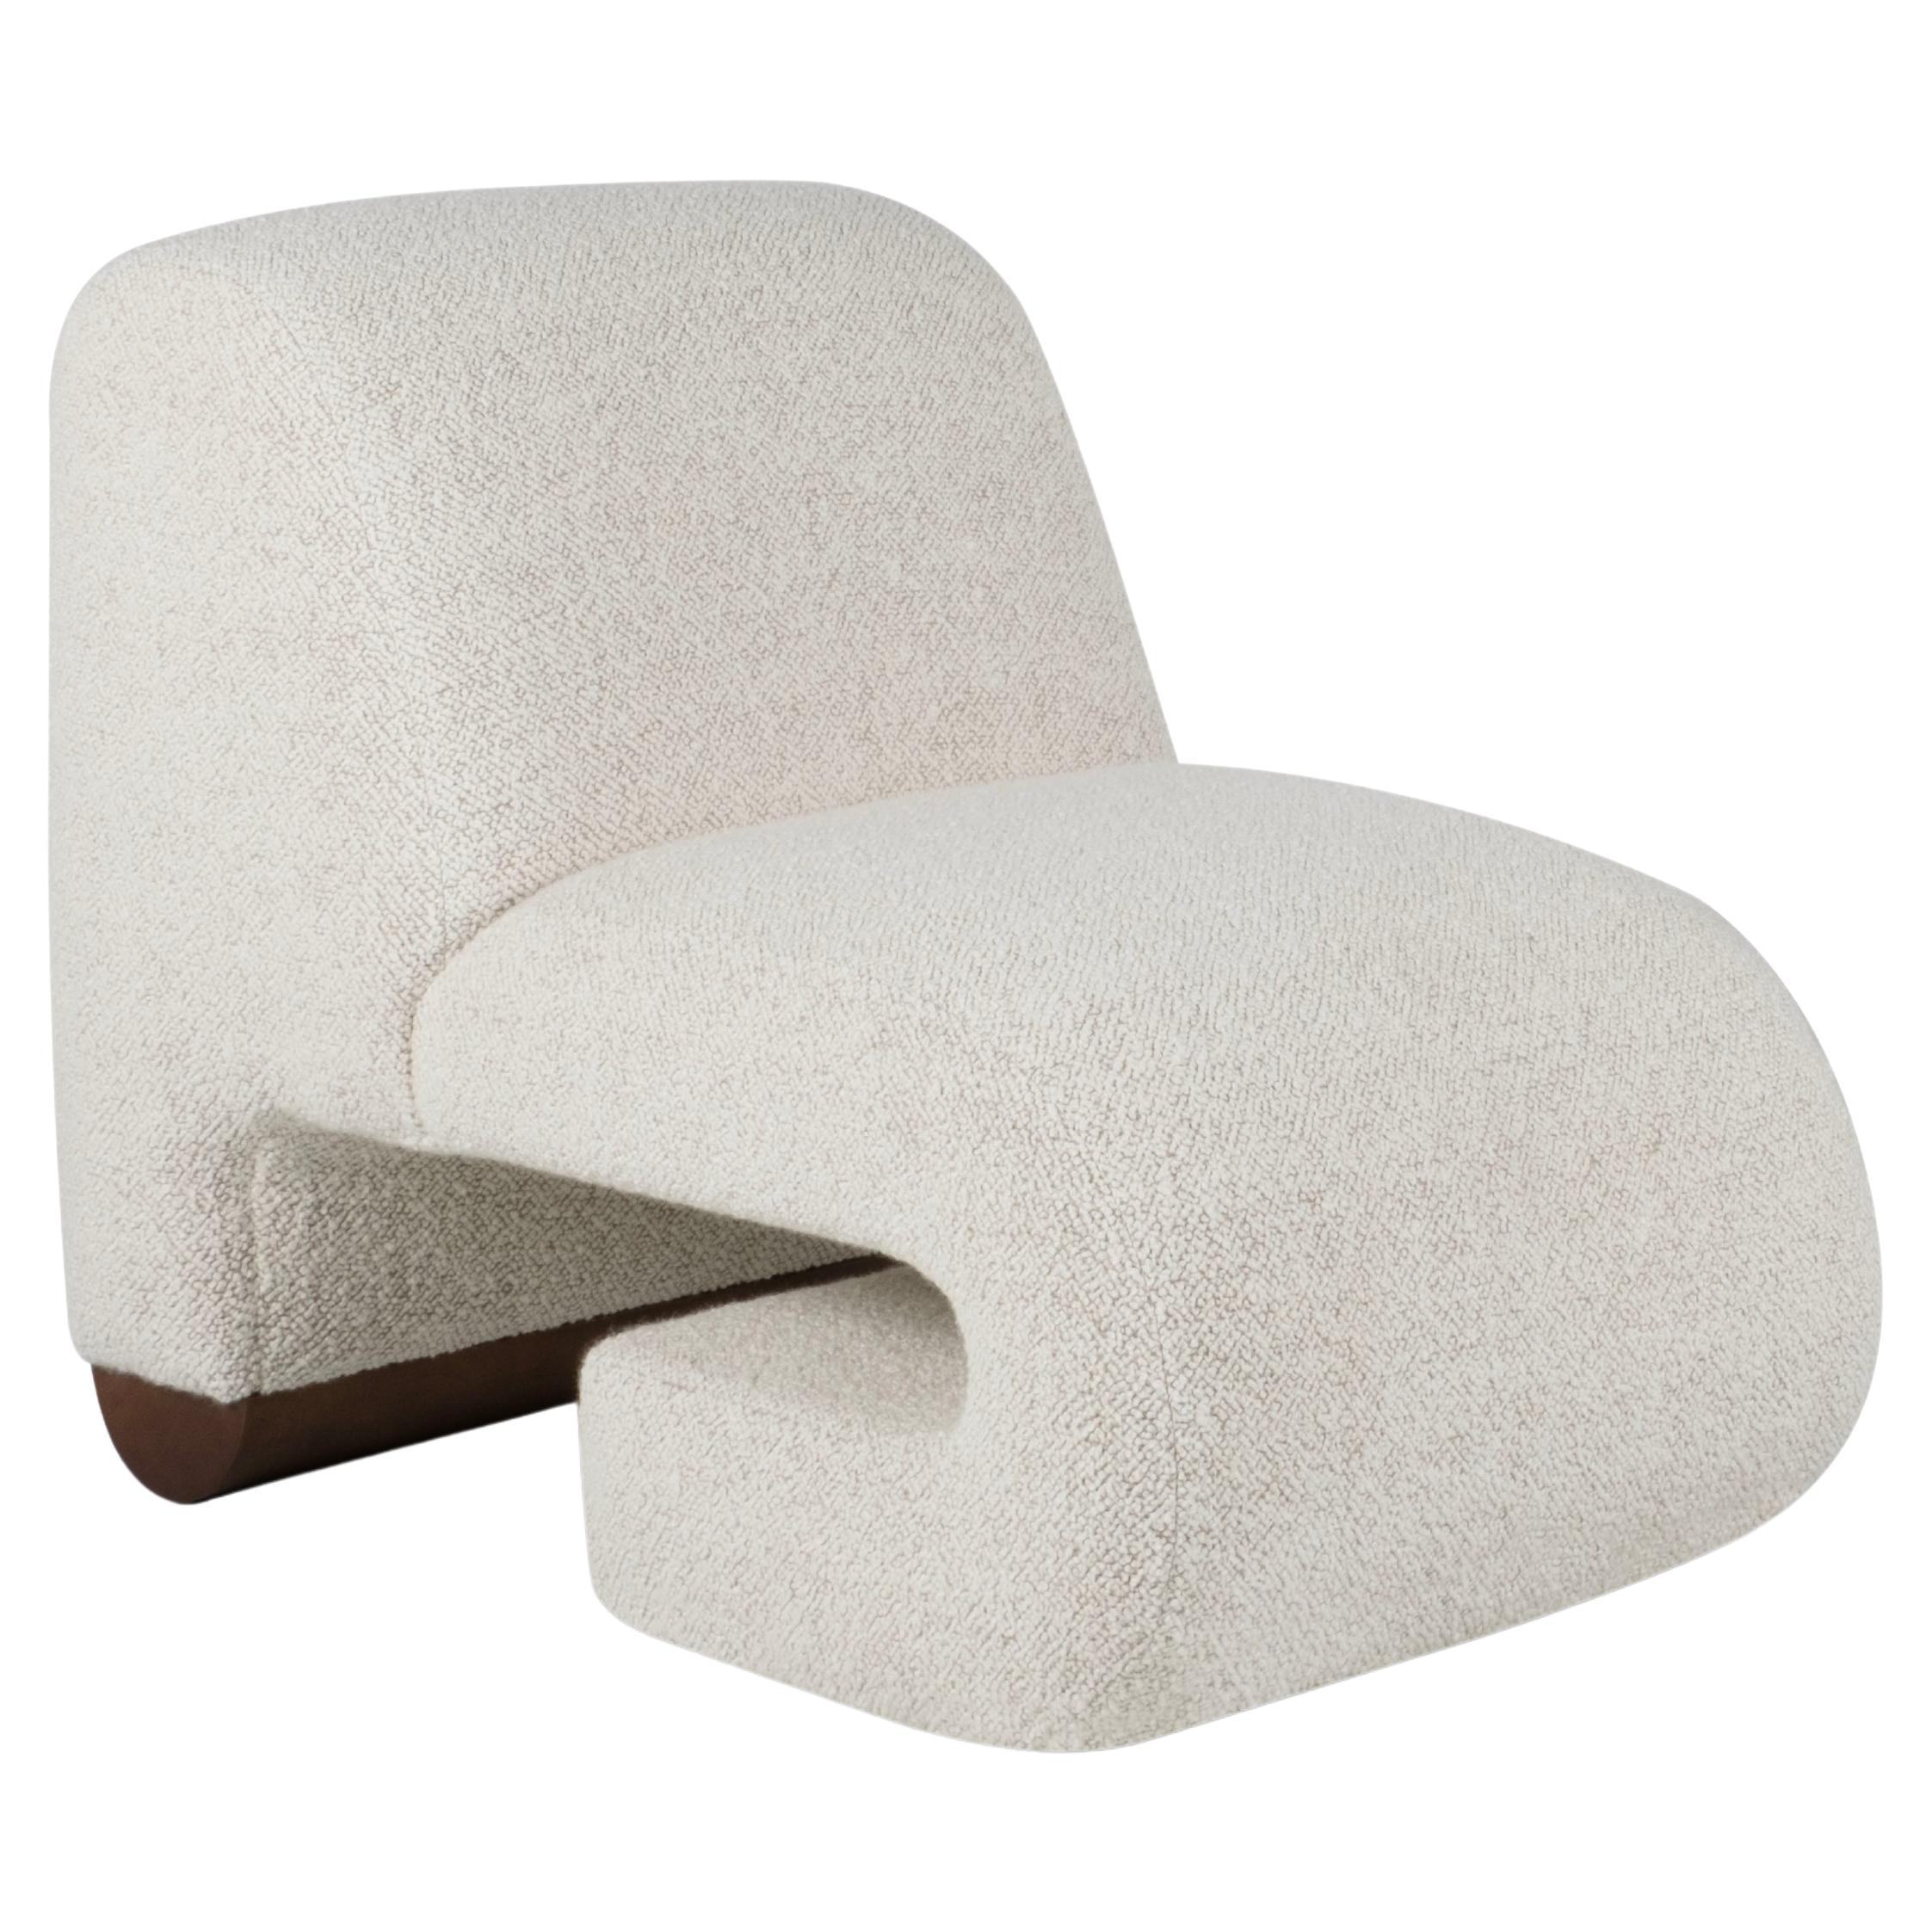 T50 Lounge Chair, Contemporary Collection, Handcrafted in Portugal - Europe by Greenapple.

Conçue par Rute Martin pour la Collection Contemporary, la chaise longue T50 rend hommage au design rétro des années 1950, une période où la décoration